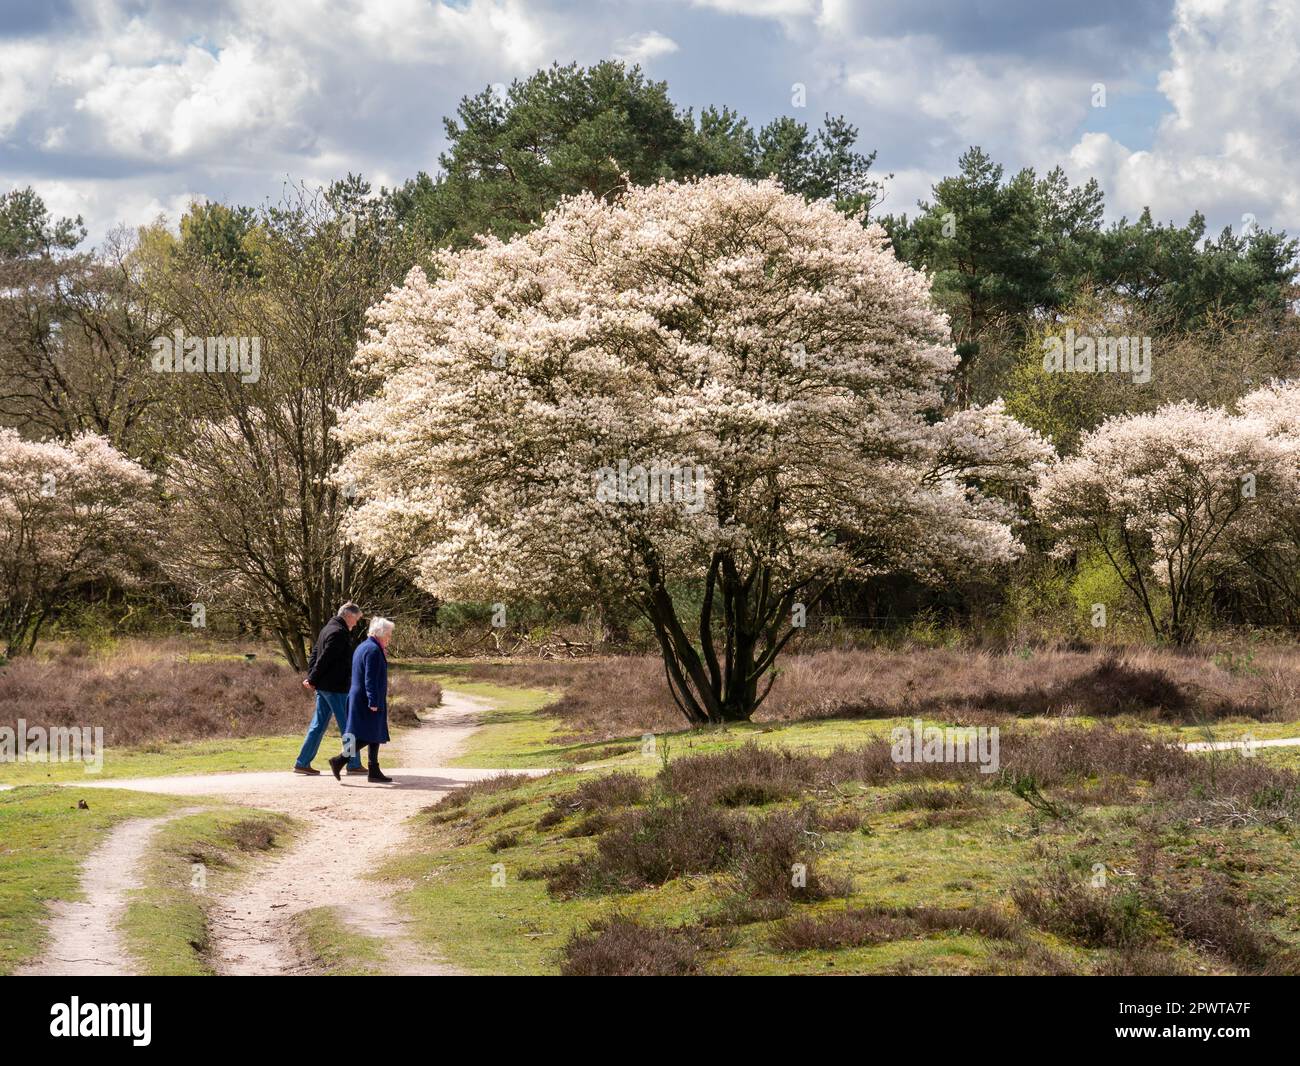 Ein älteres Paar, das auf einem Fußweg spaziert und den Baum der Wacholderbeere, Amelanchier Lamarkii, in voller Blüte im Naturschutzgebiet Zuiderheide, het Gooi, Niederlande, betreibt Stockfoto